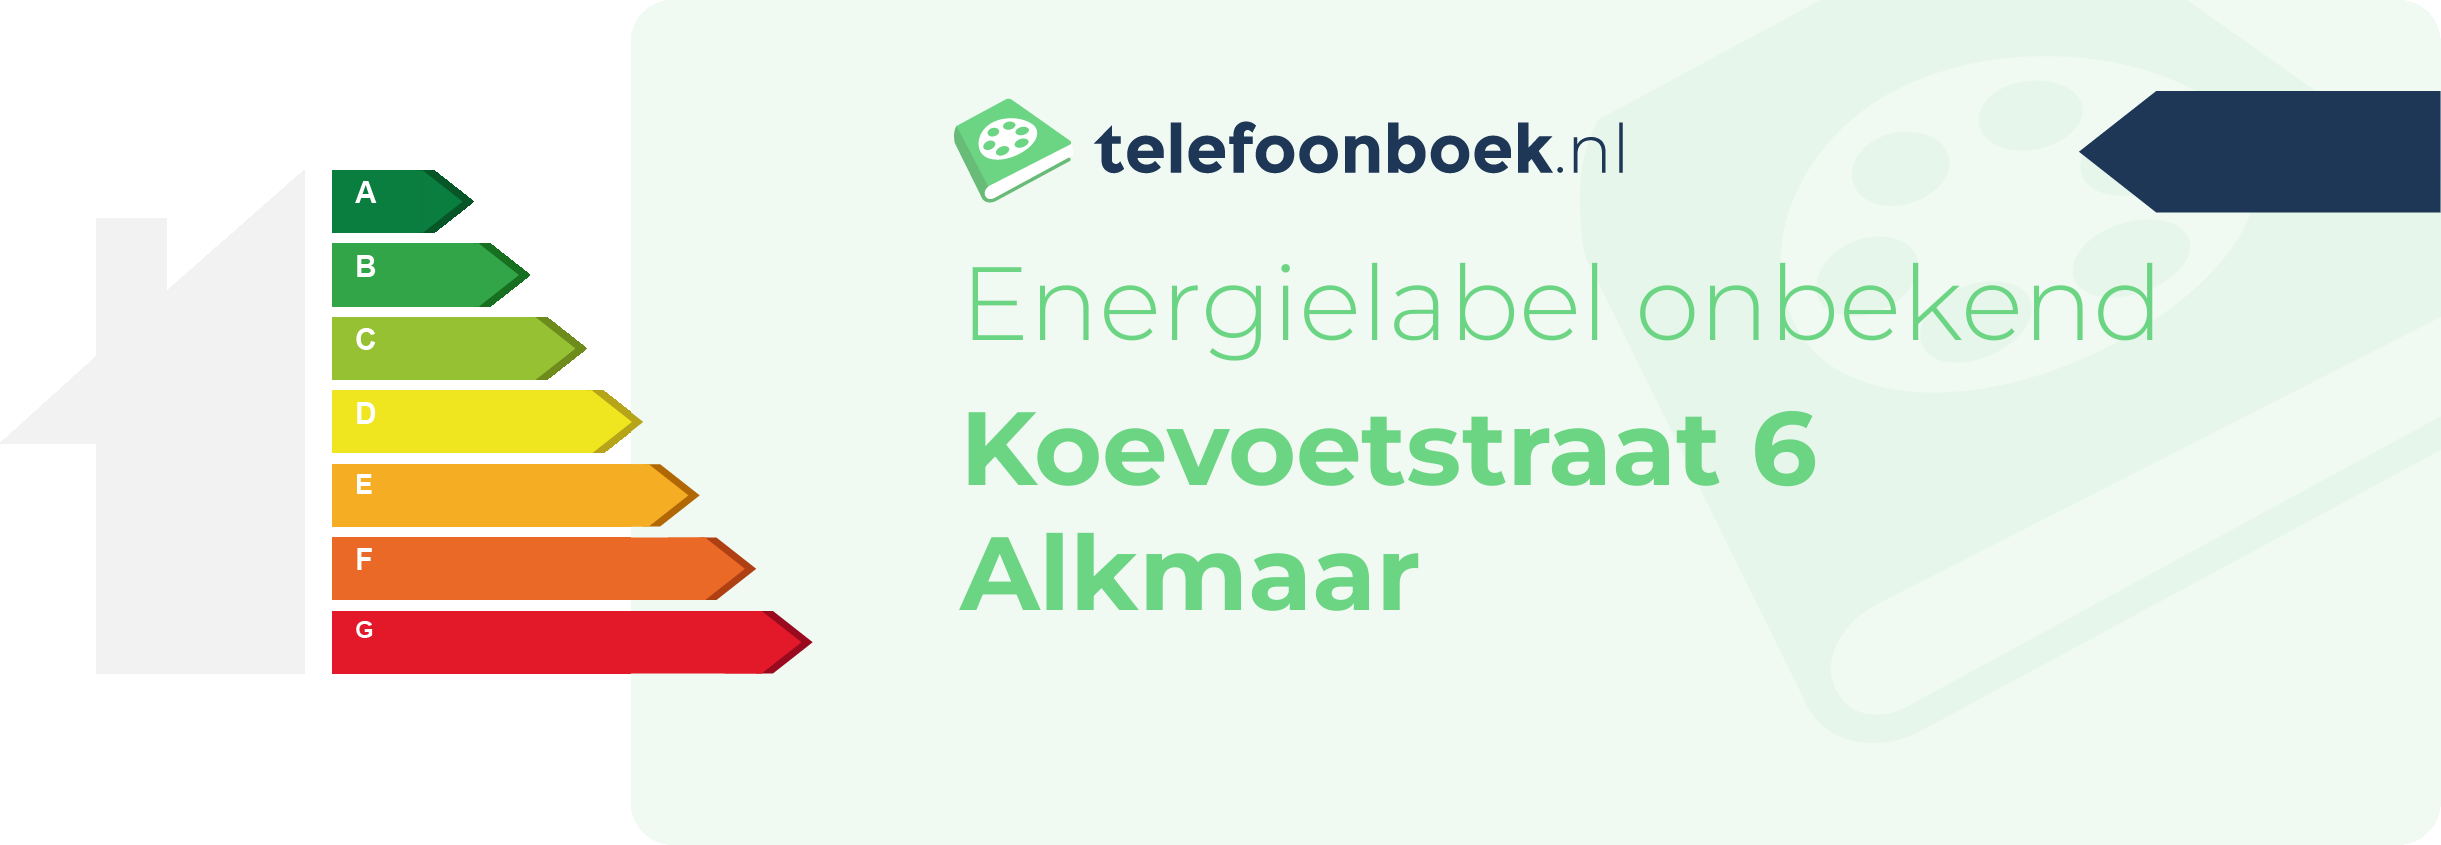 Energielabel Koevoetstraat 6 Alkmaar